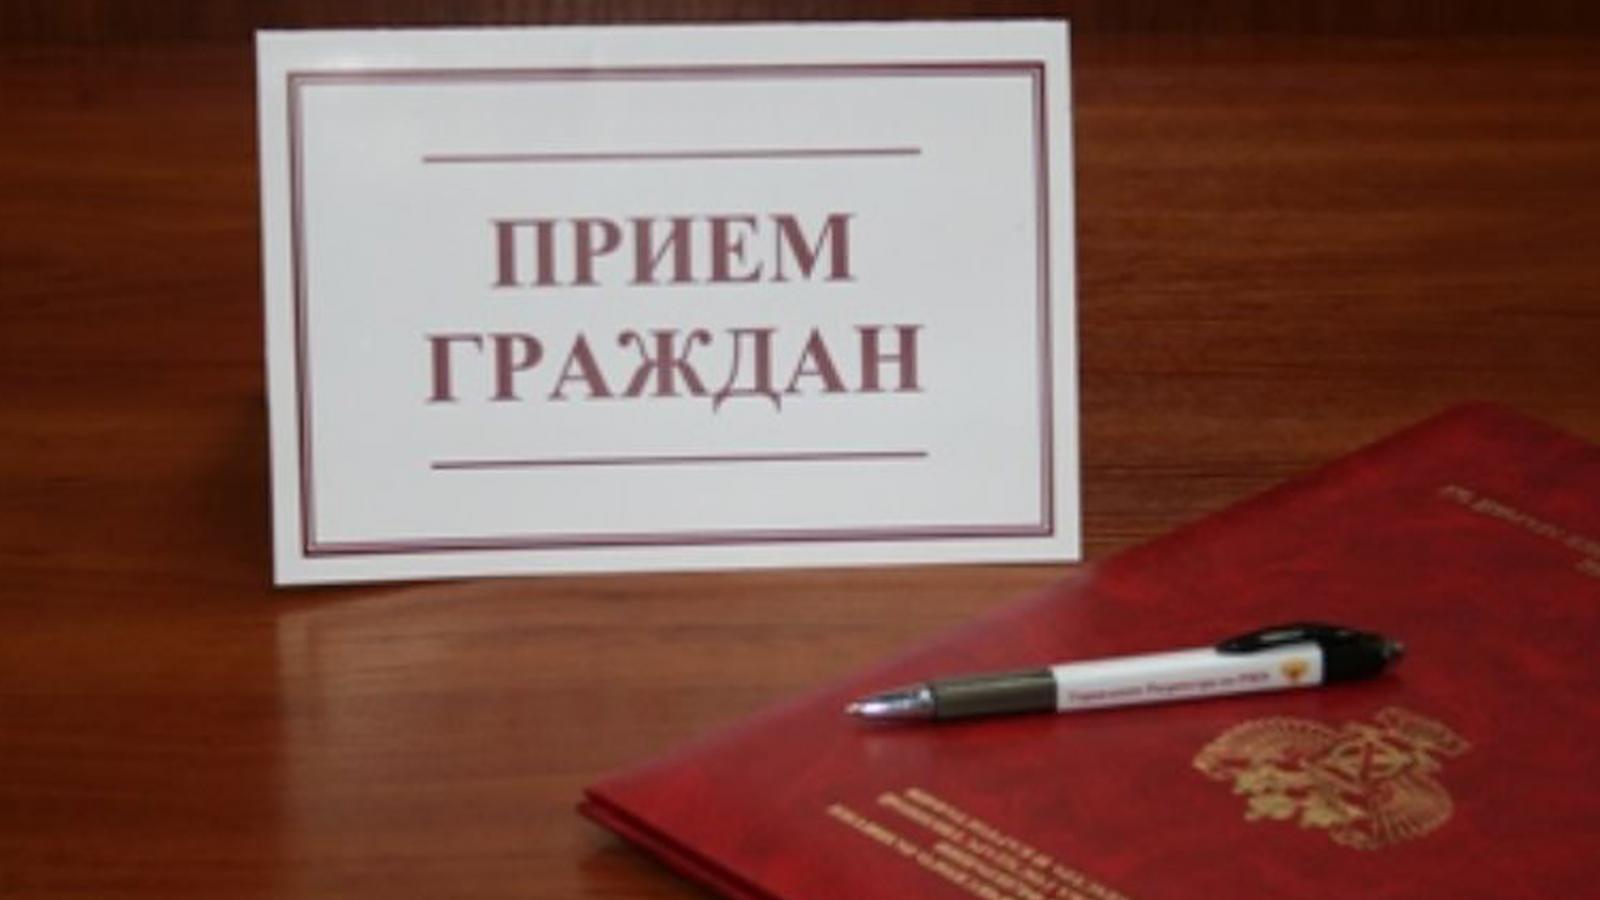 Региональный день приема граждан пройдет завтра в Вологде